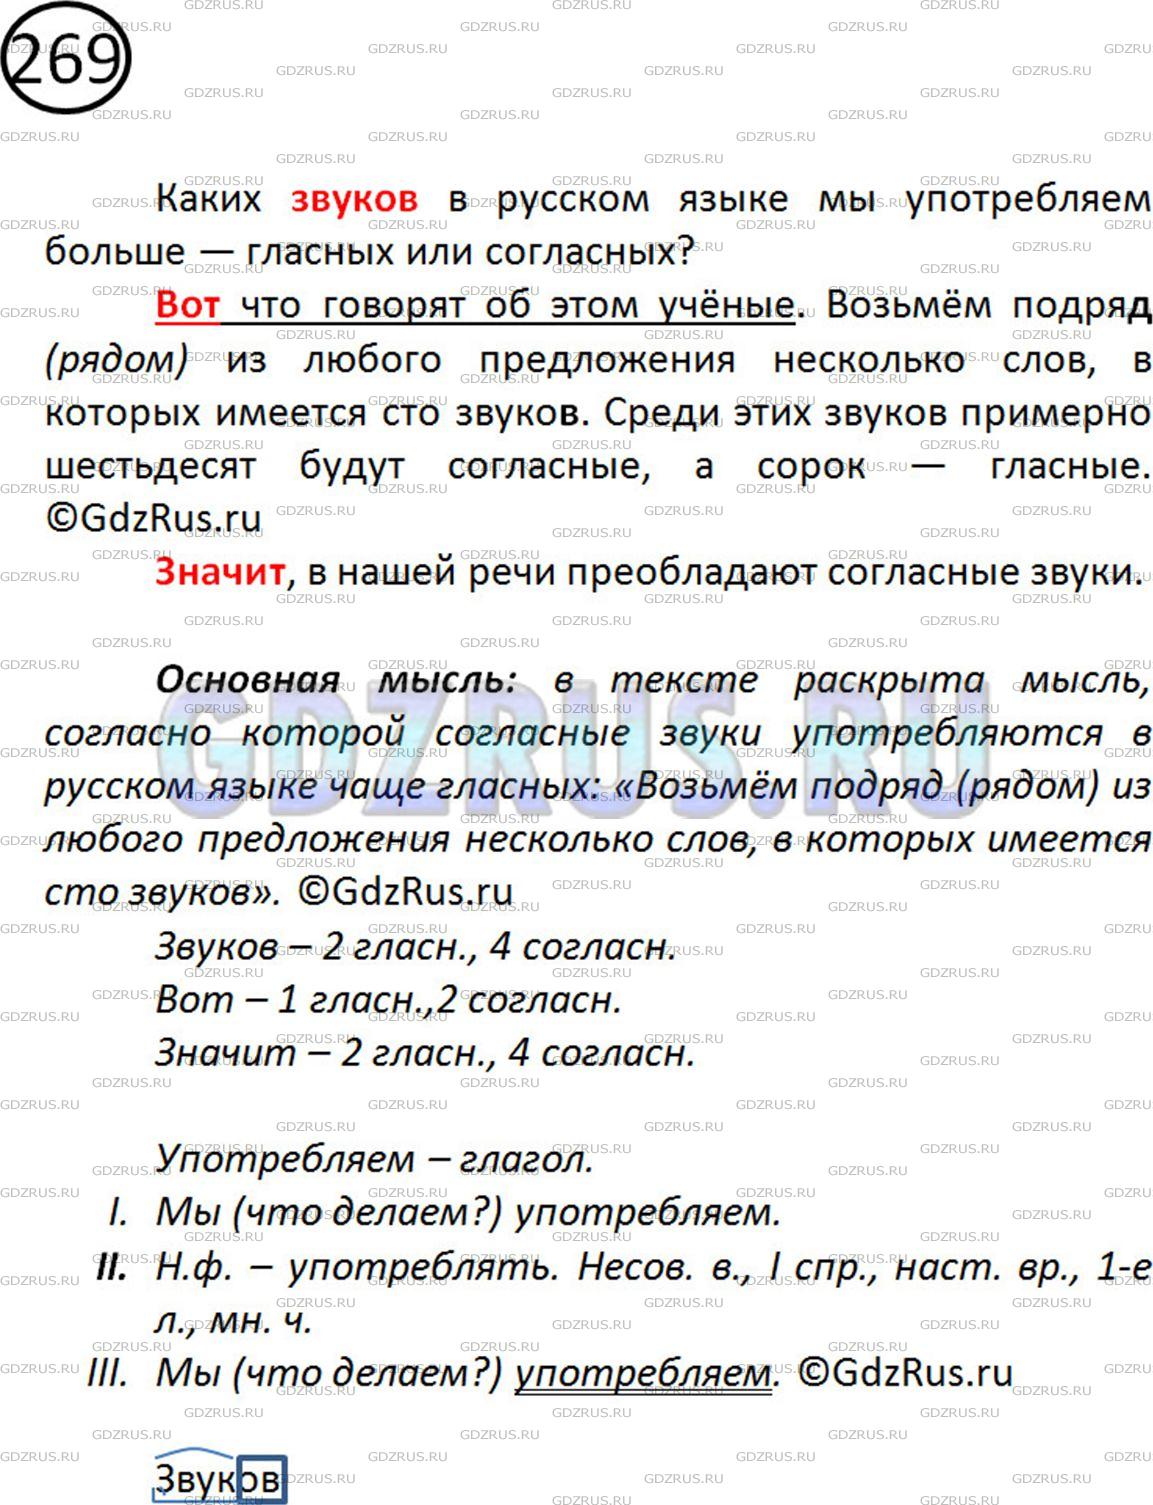 Фото решения 2: Номер №278 из ГДЗ по Русскому языку 5 класс: Ладыженская Т.А. 2019г.